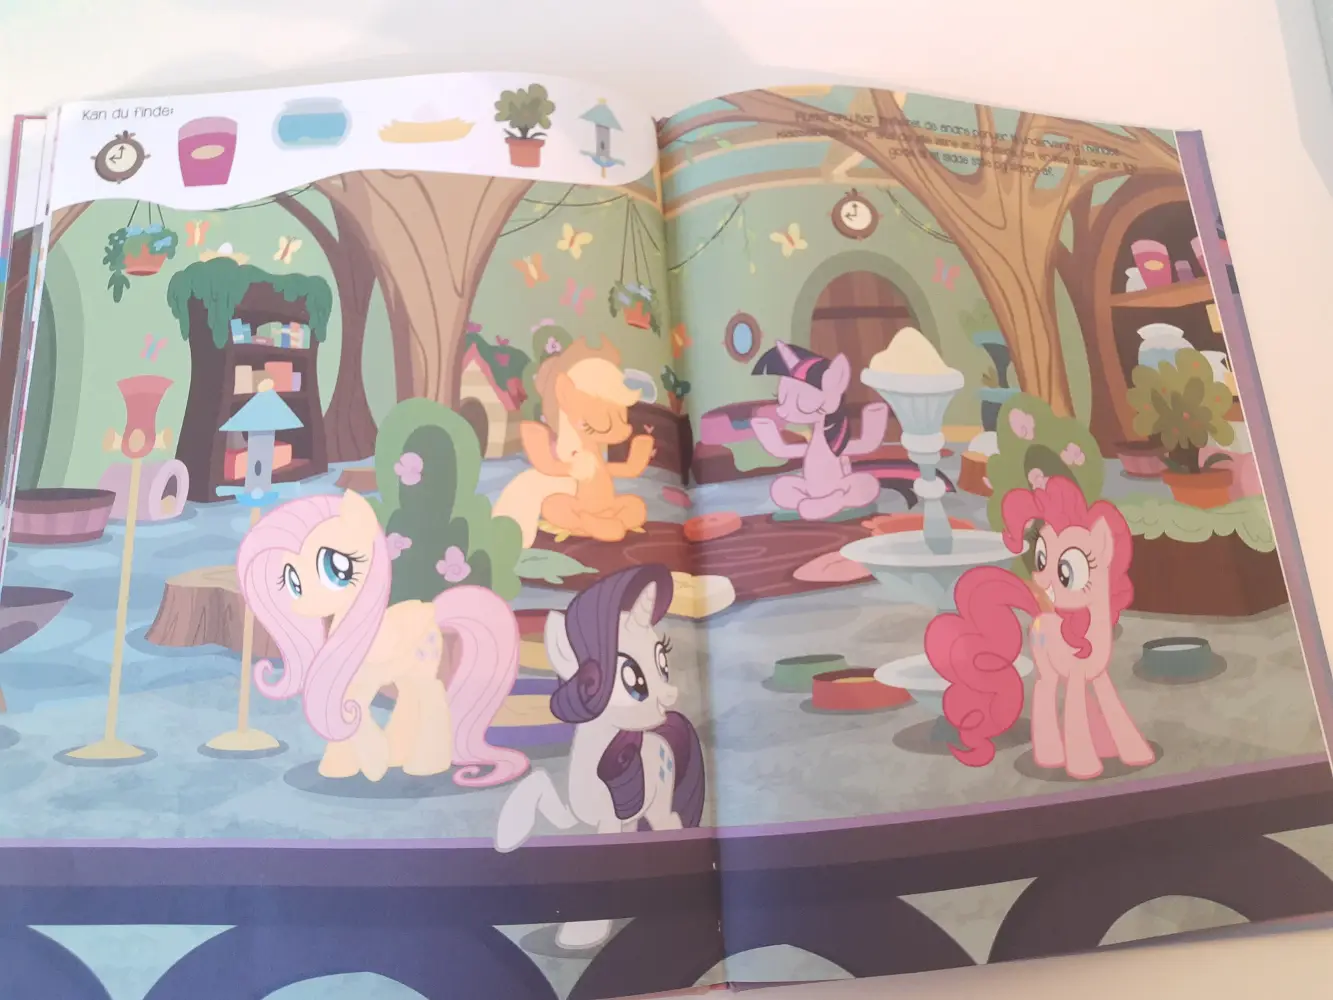 Hasbro Kig og find bog My little Pony